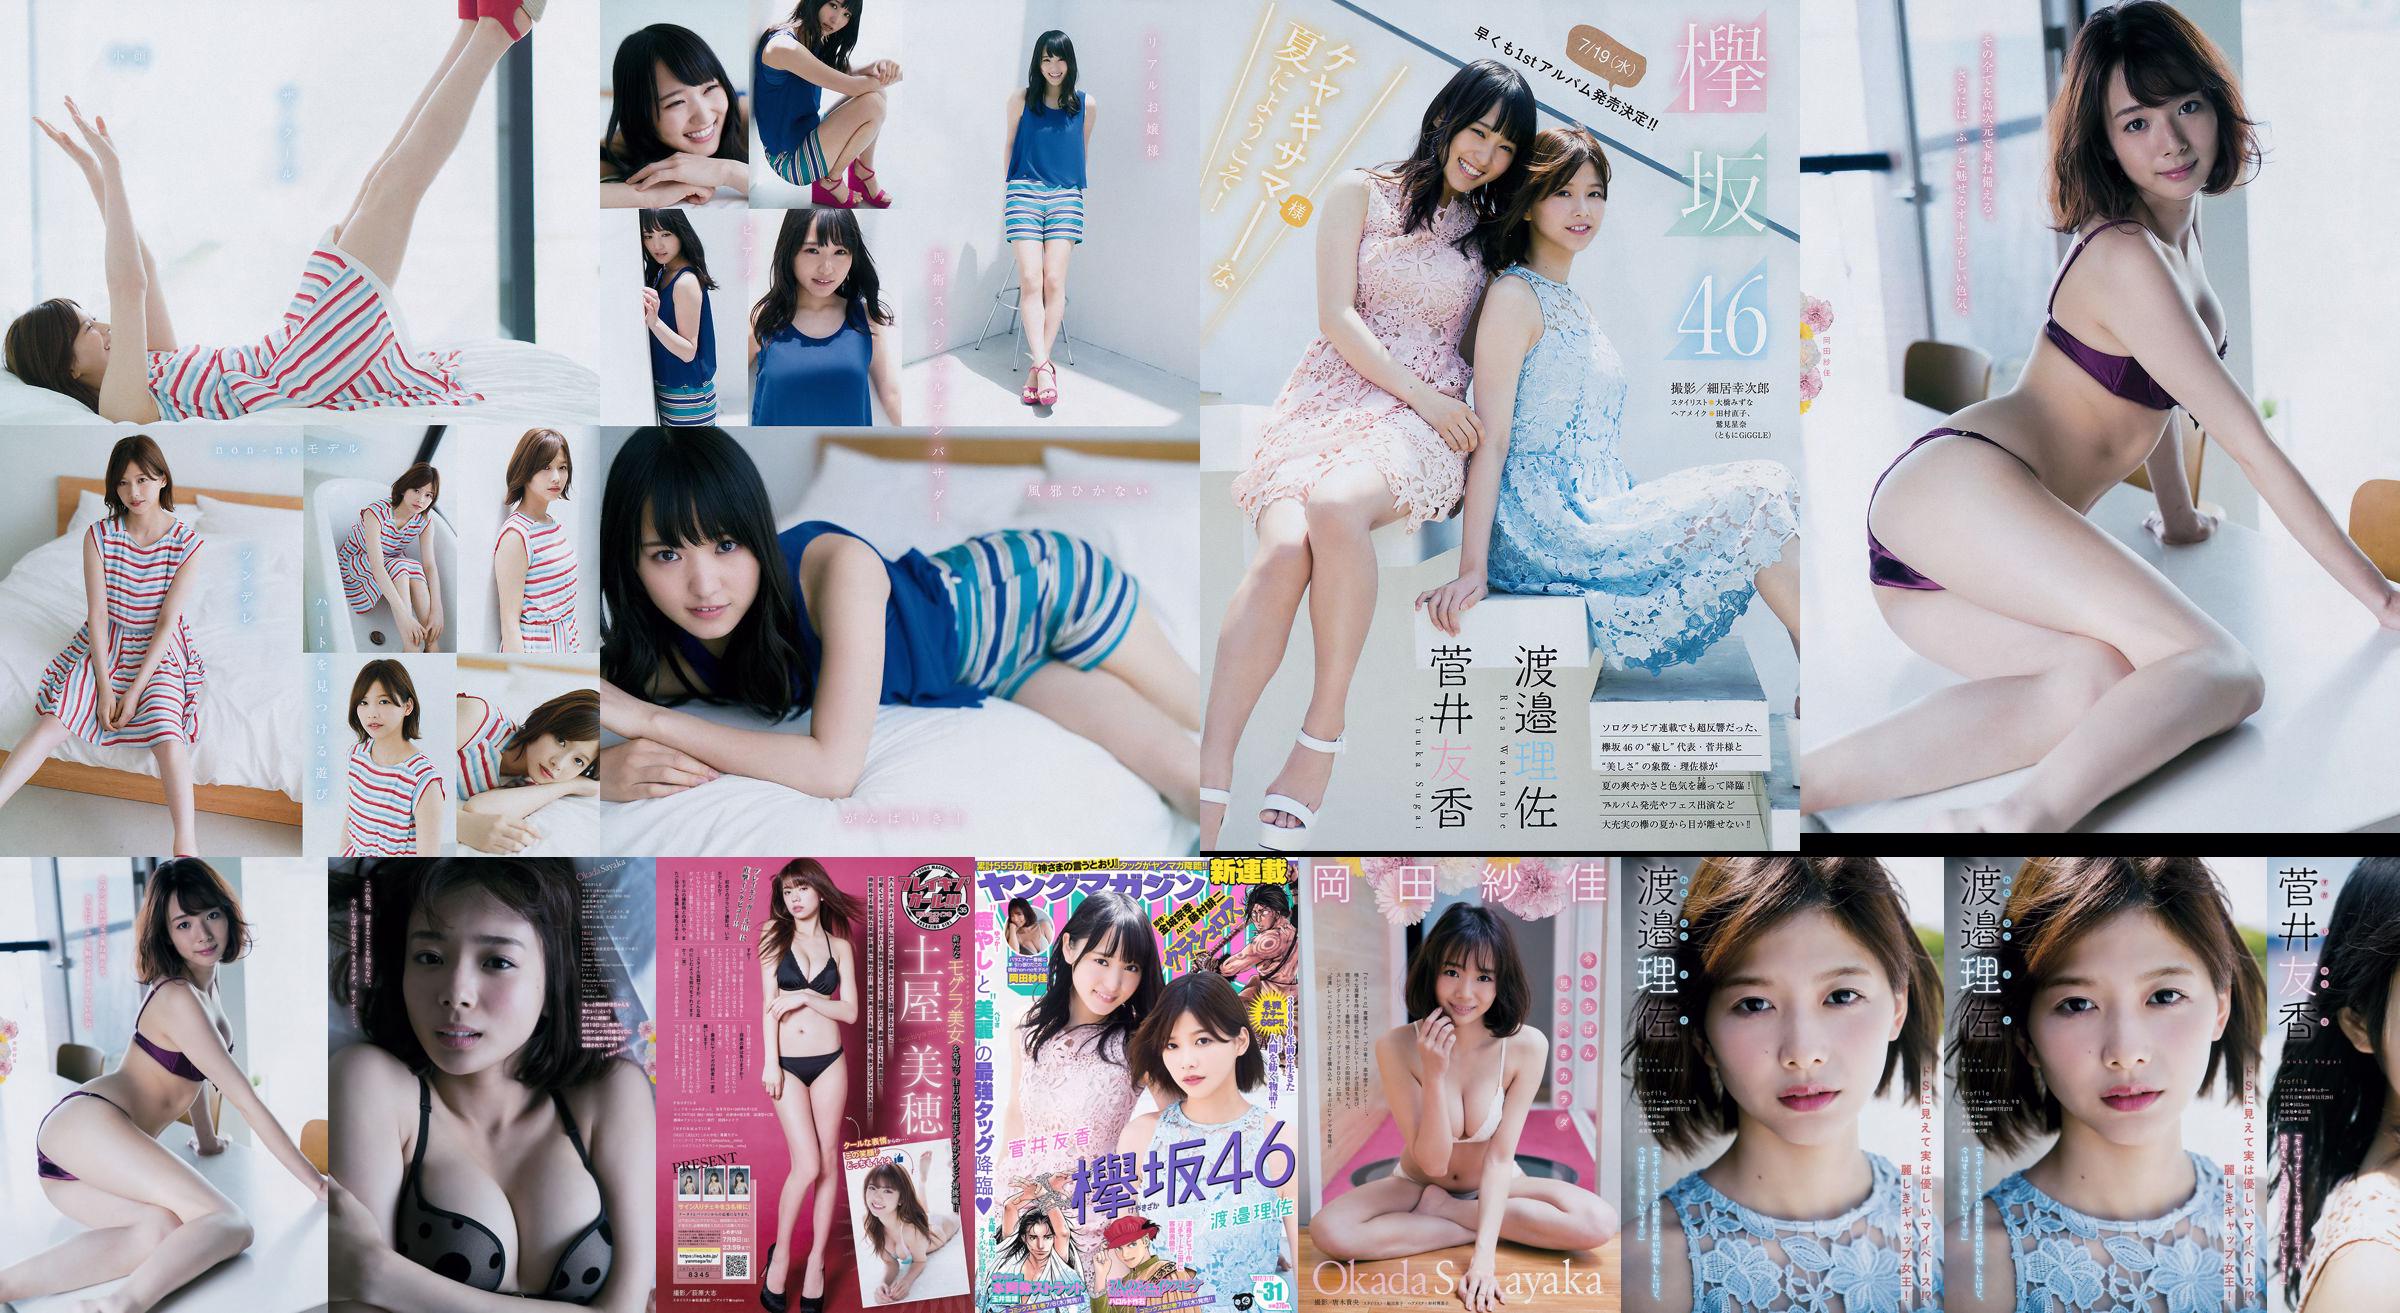 [Young Magazine] Watanabe Risa, Sugai Yuka, Okada Saika 2017 Magazine photo n ° 31 No.22e0cc Page 1